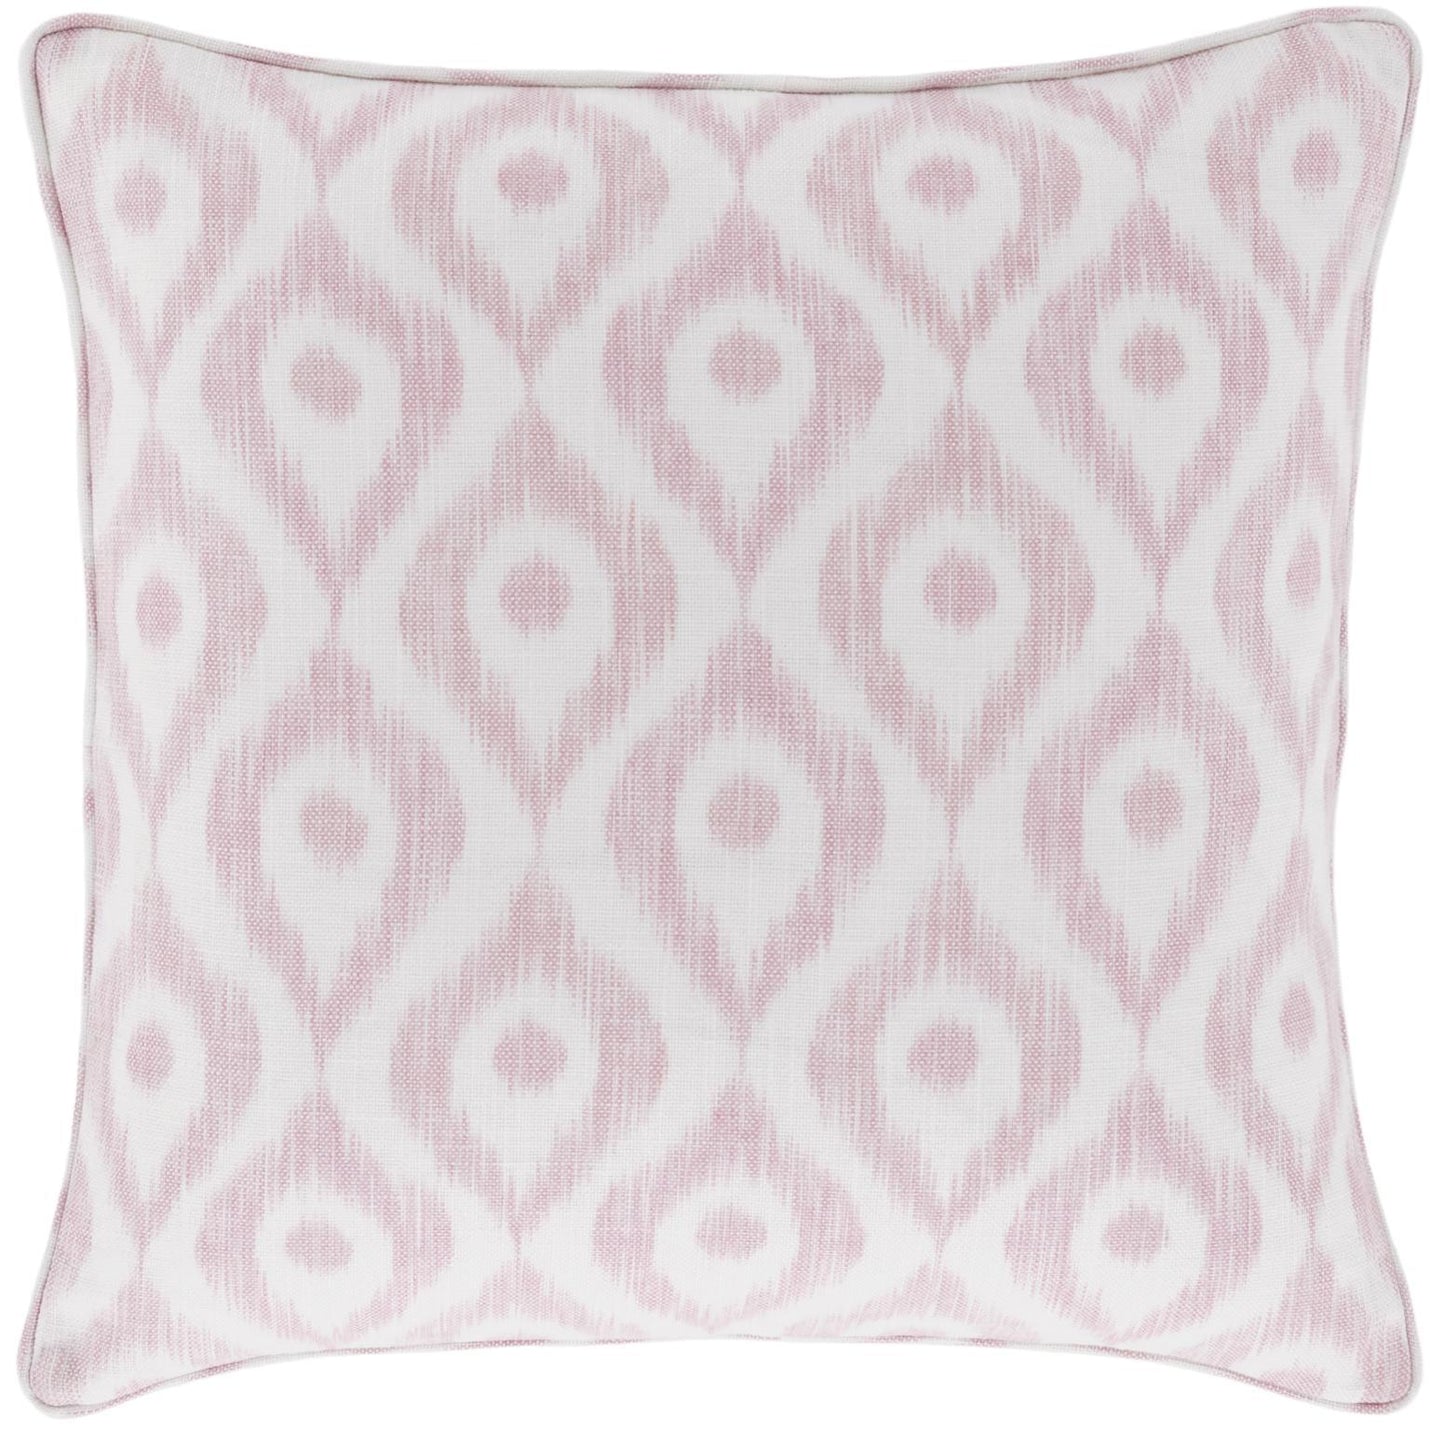 Pillow - "Indie" Pink - Indoor/Outdoor - 22"